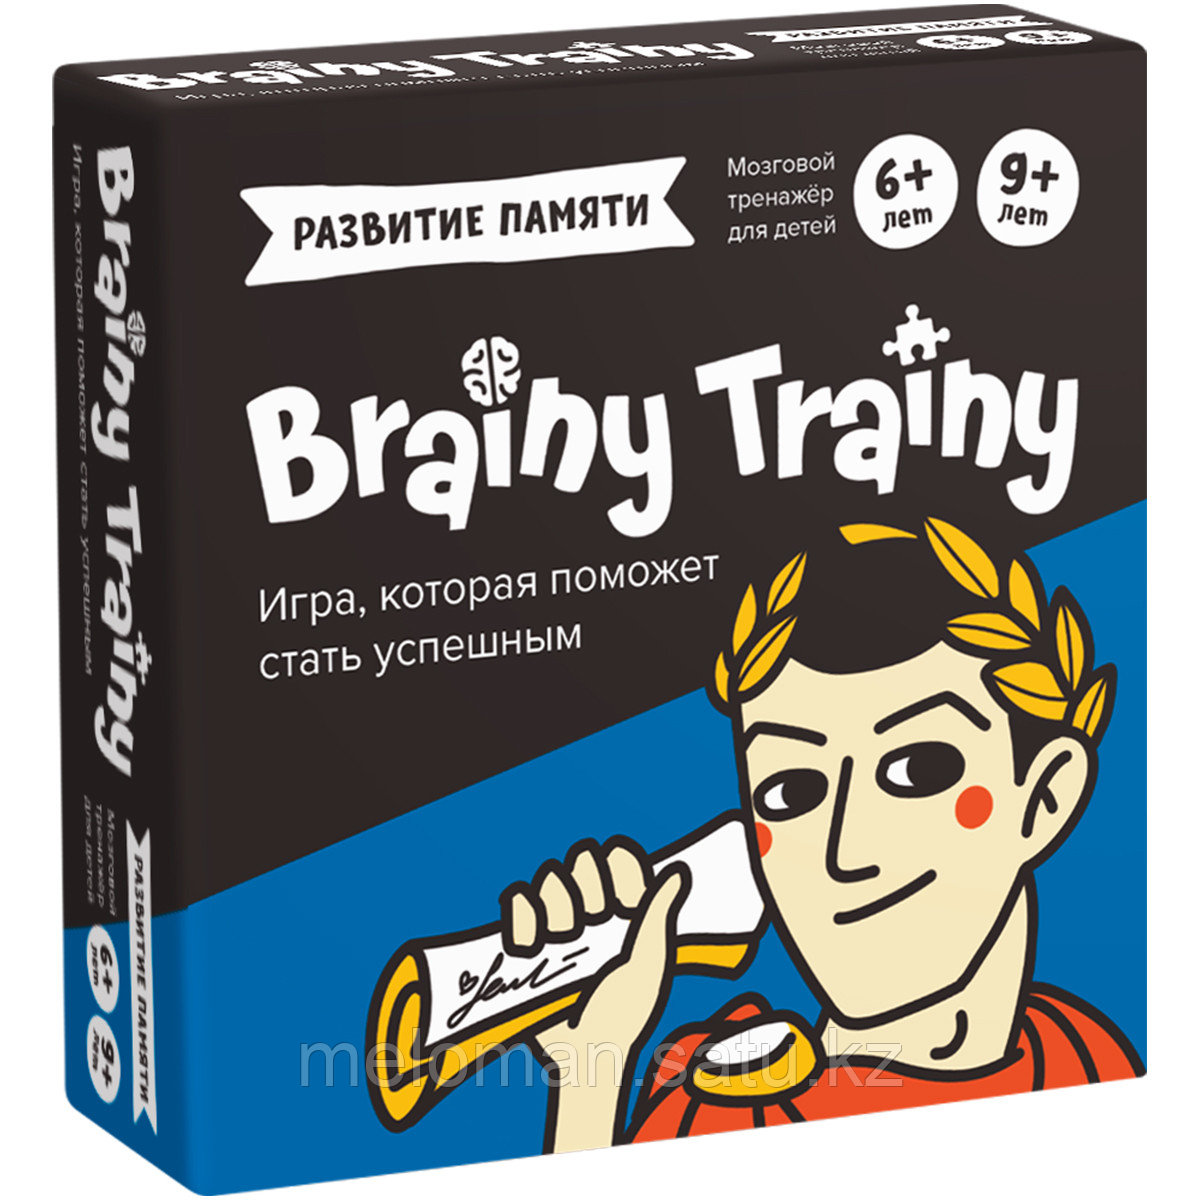 BRAINY TRAINY: Развитие памяти